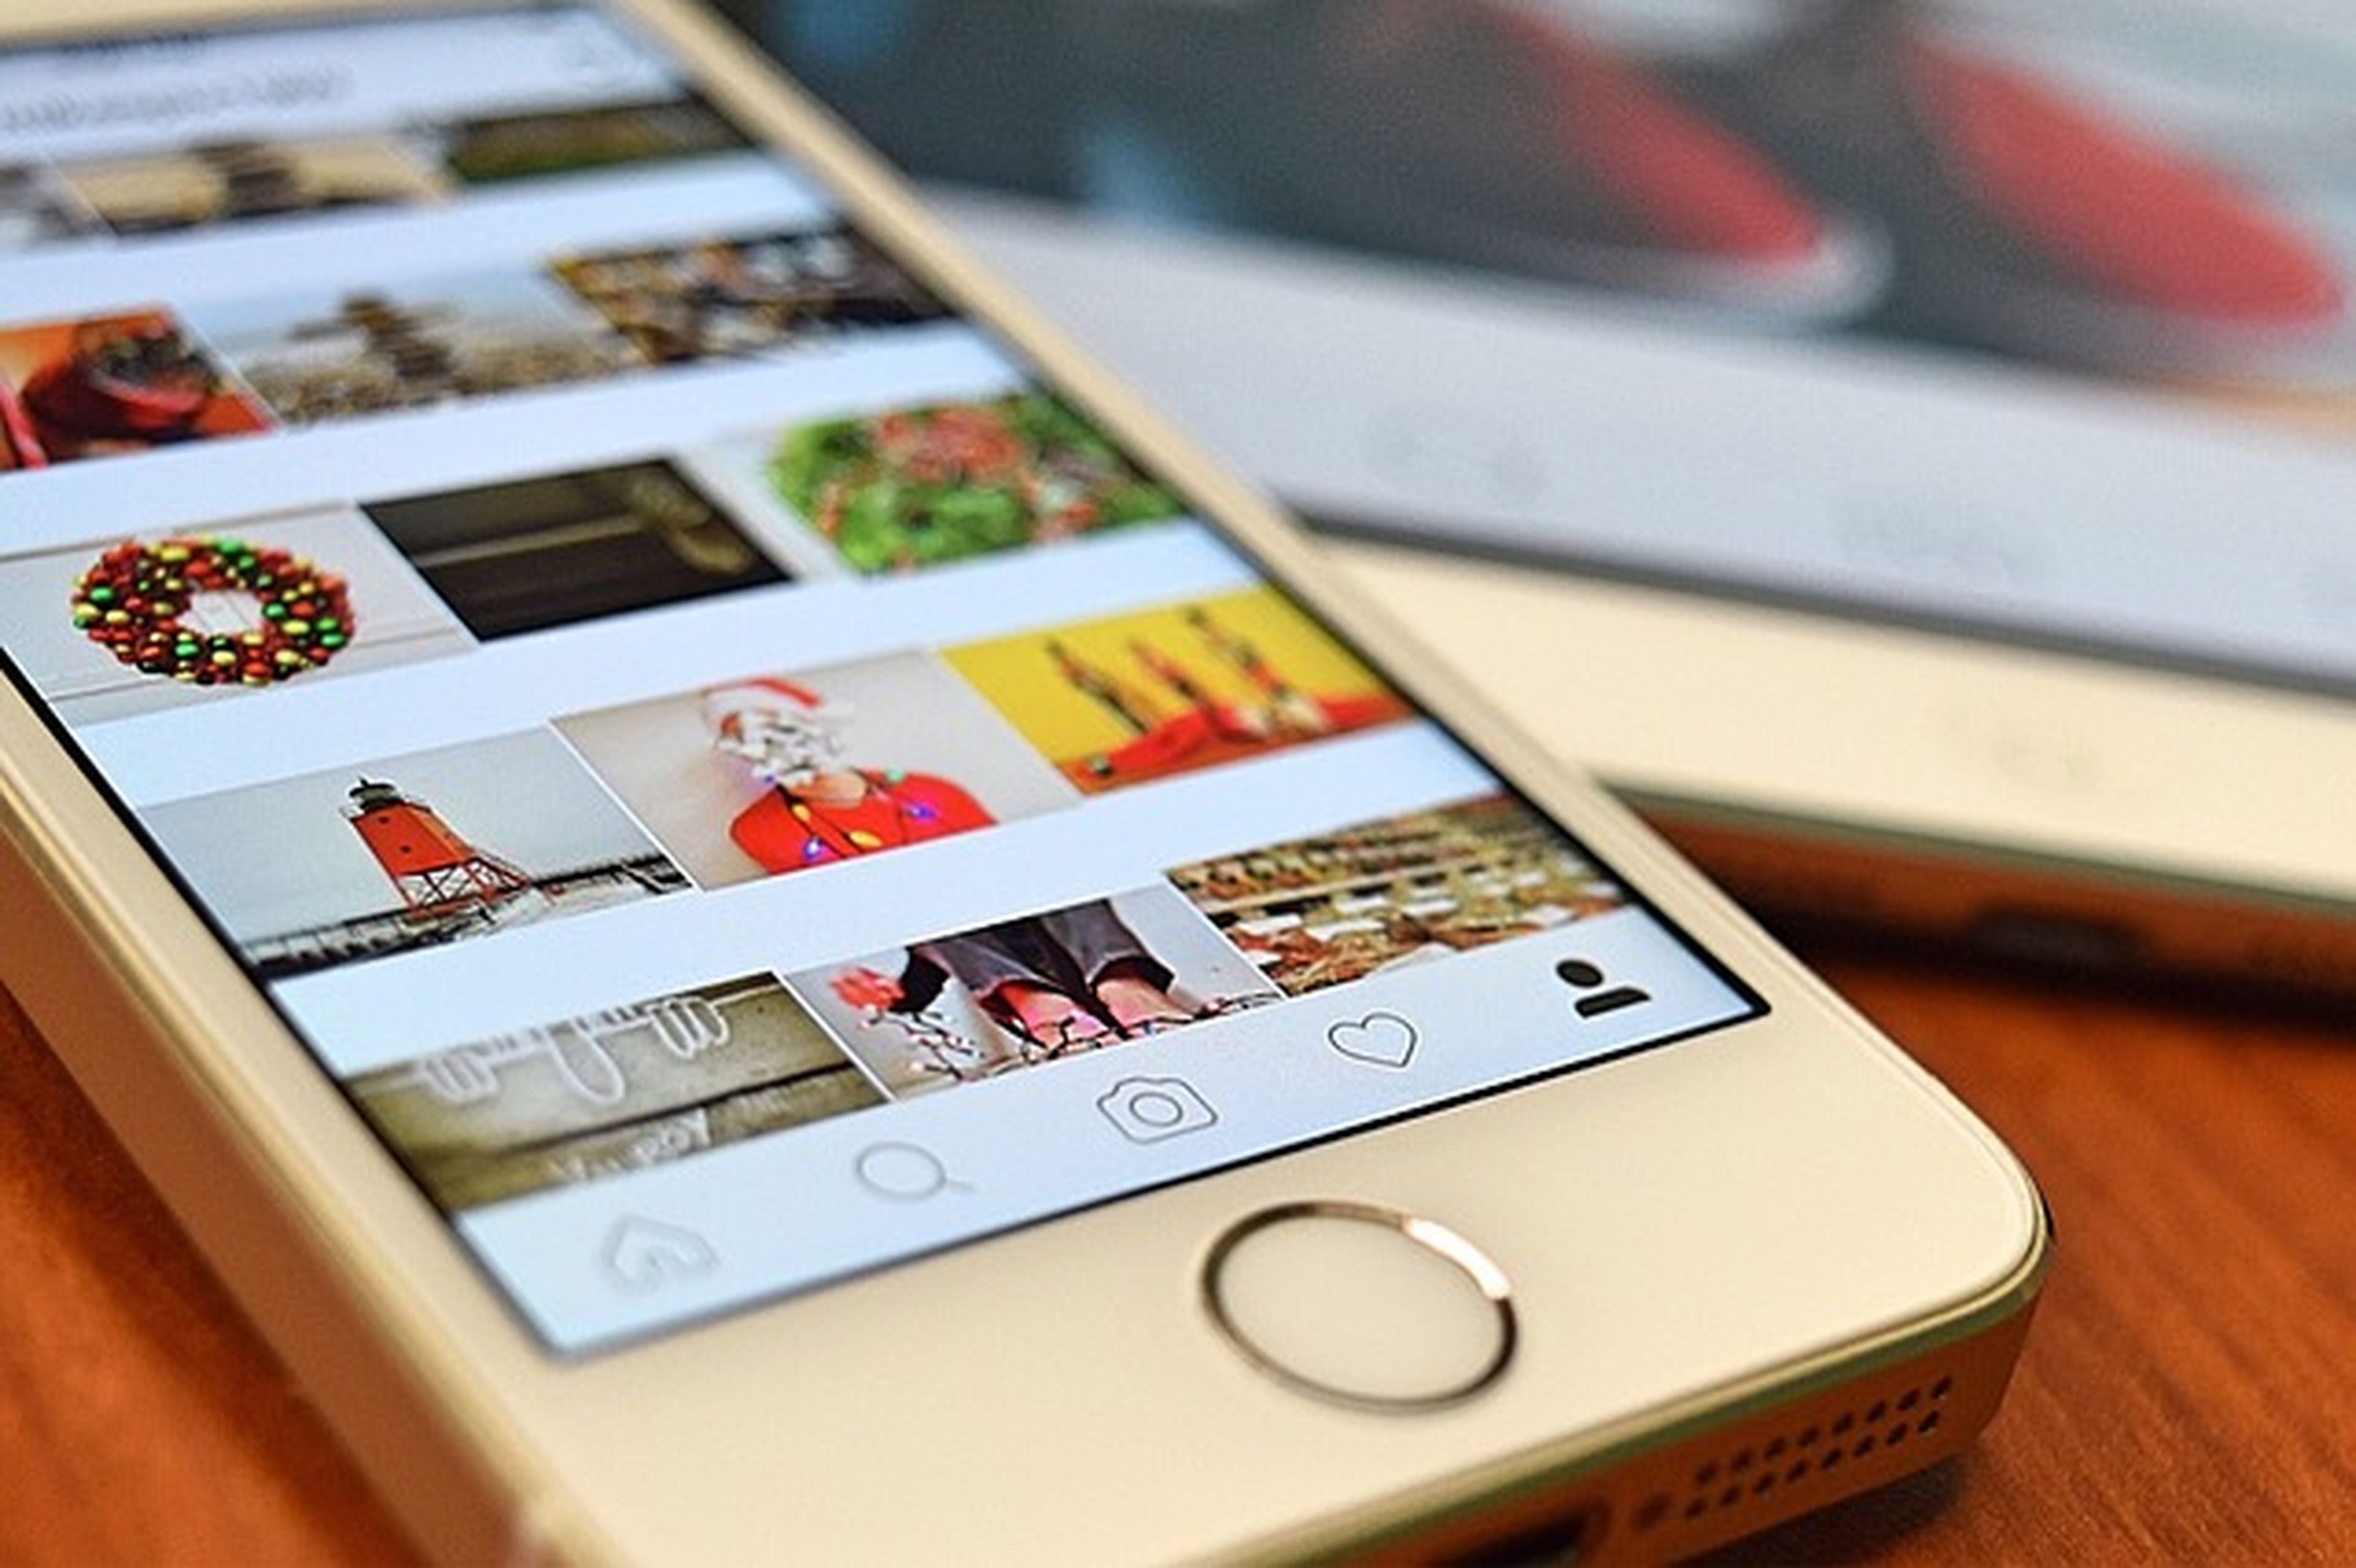 Instagram facilita a sus usuarios la publicación múltiple